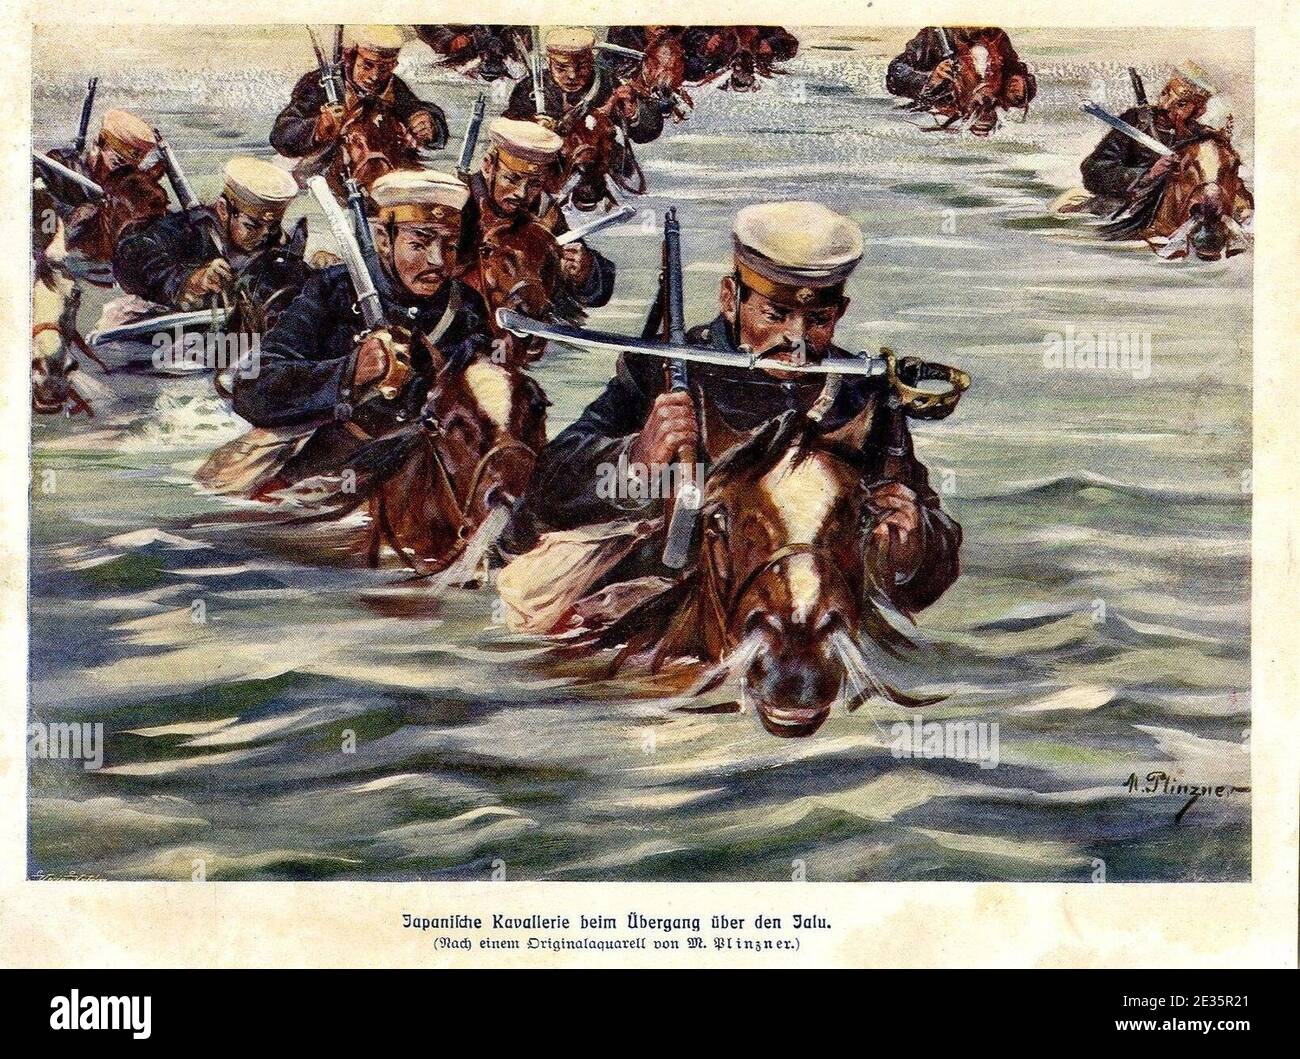 M. Plinzner - Japanische Kavallerie beim Übergang über den Jalu, 1905. Stock Photo